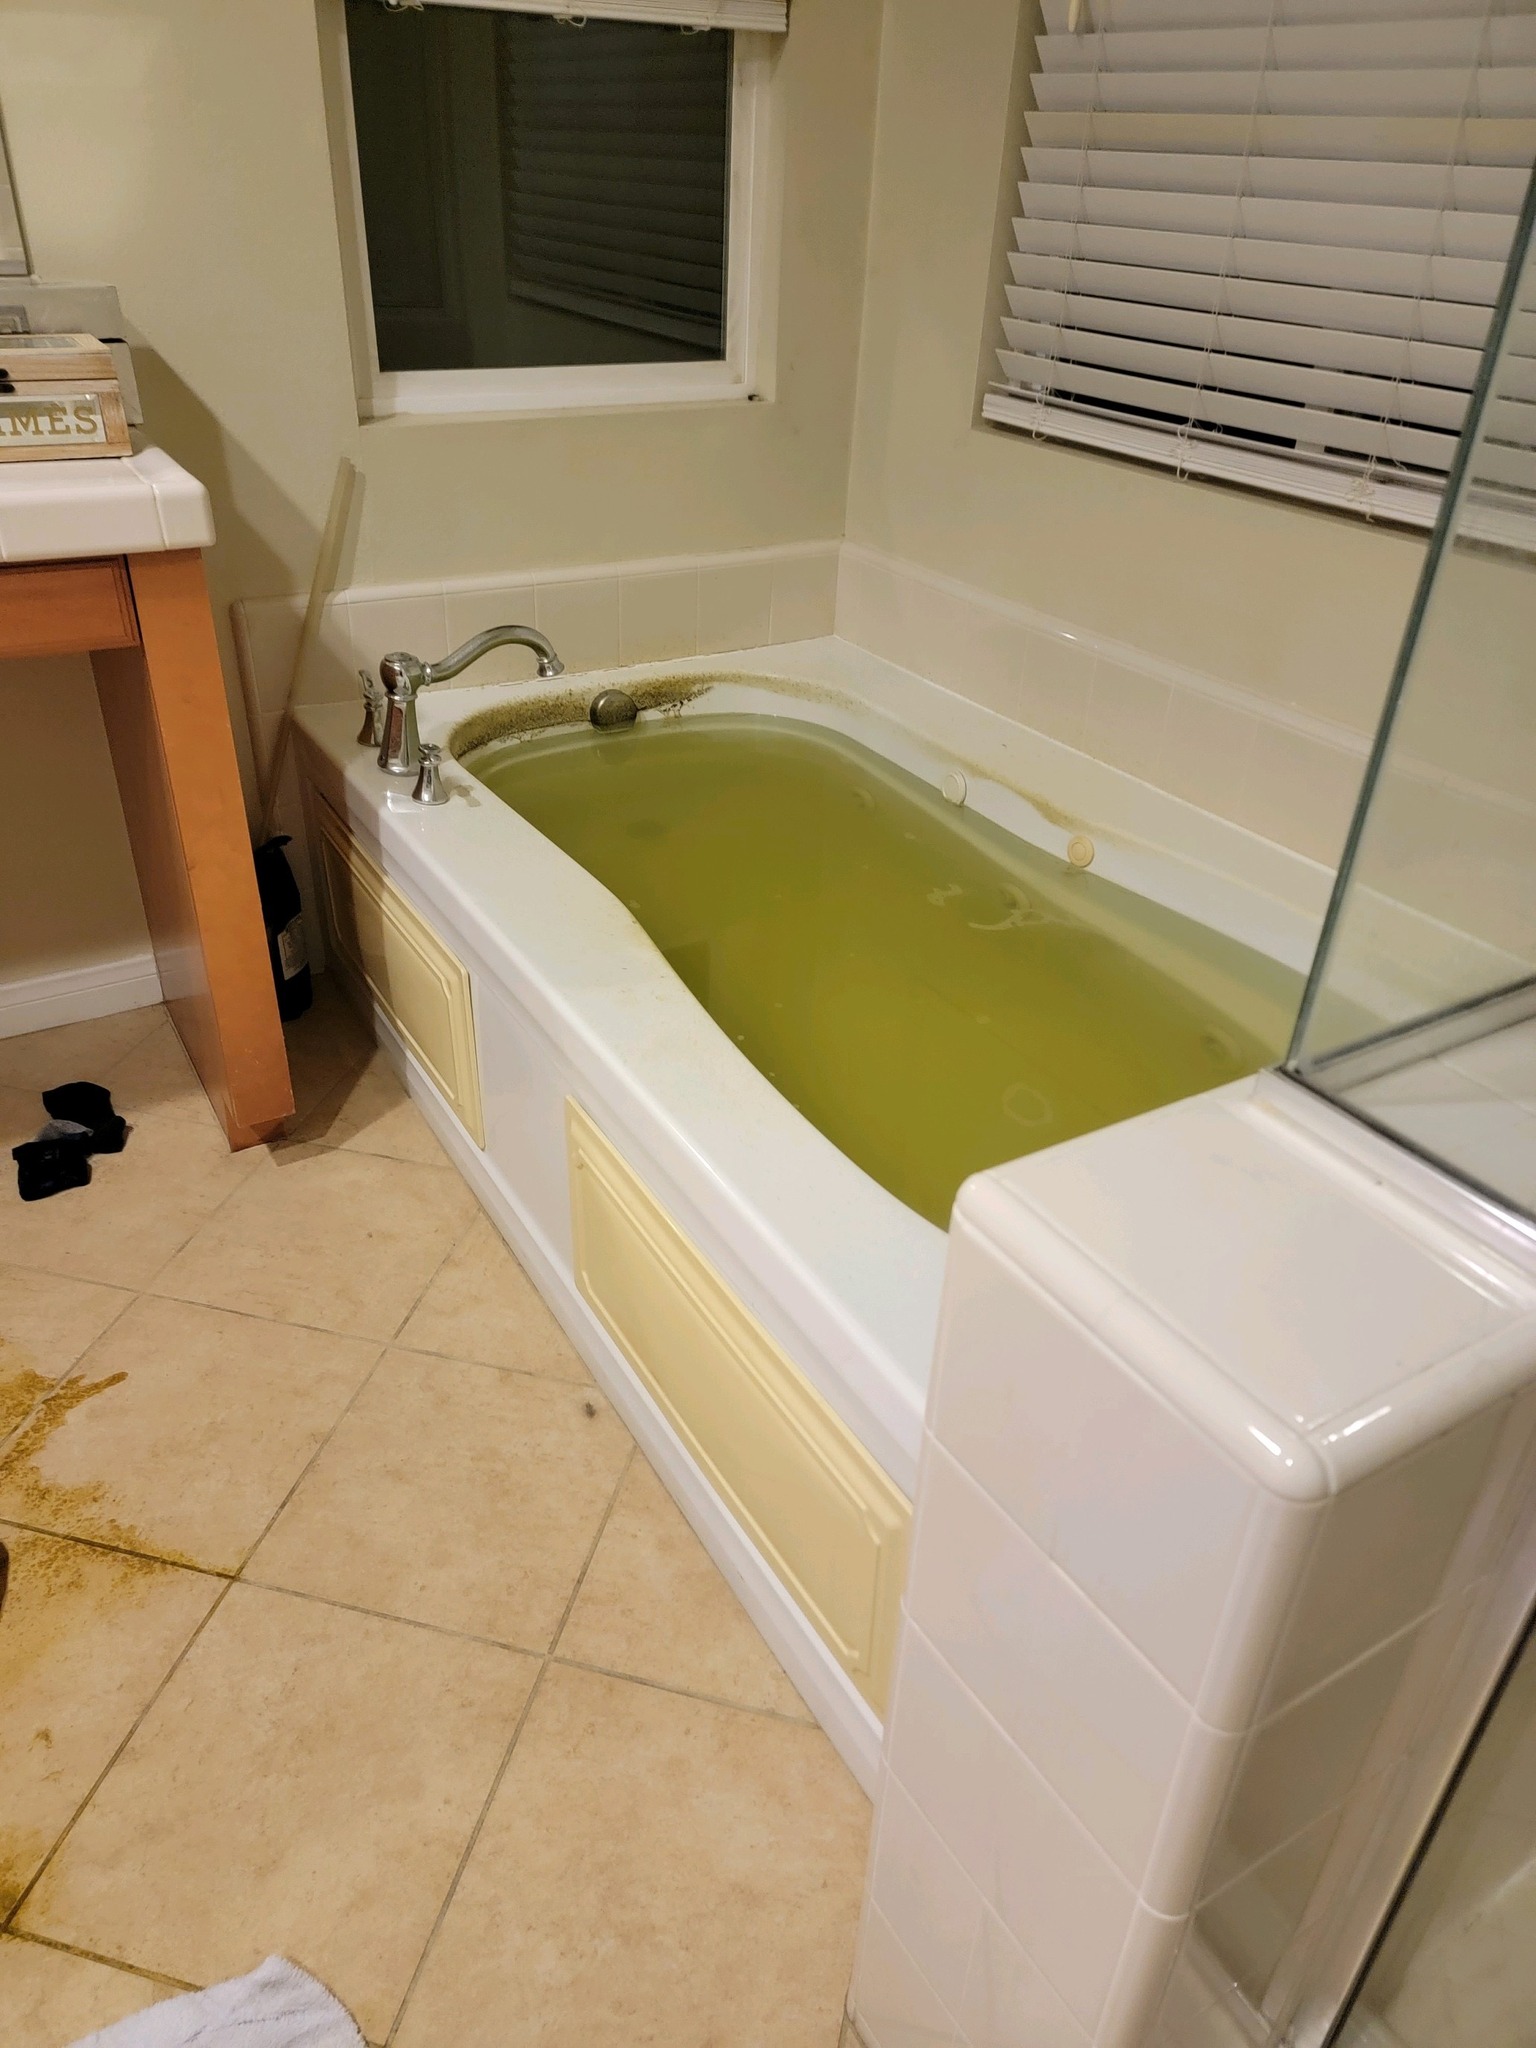 Aaron Carter Death Scene Photos - bathroom - Mest